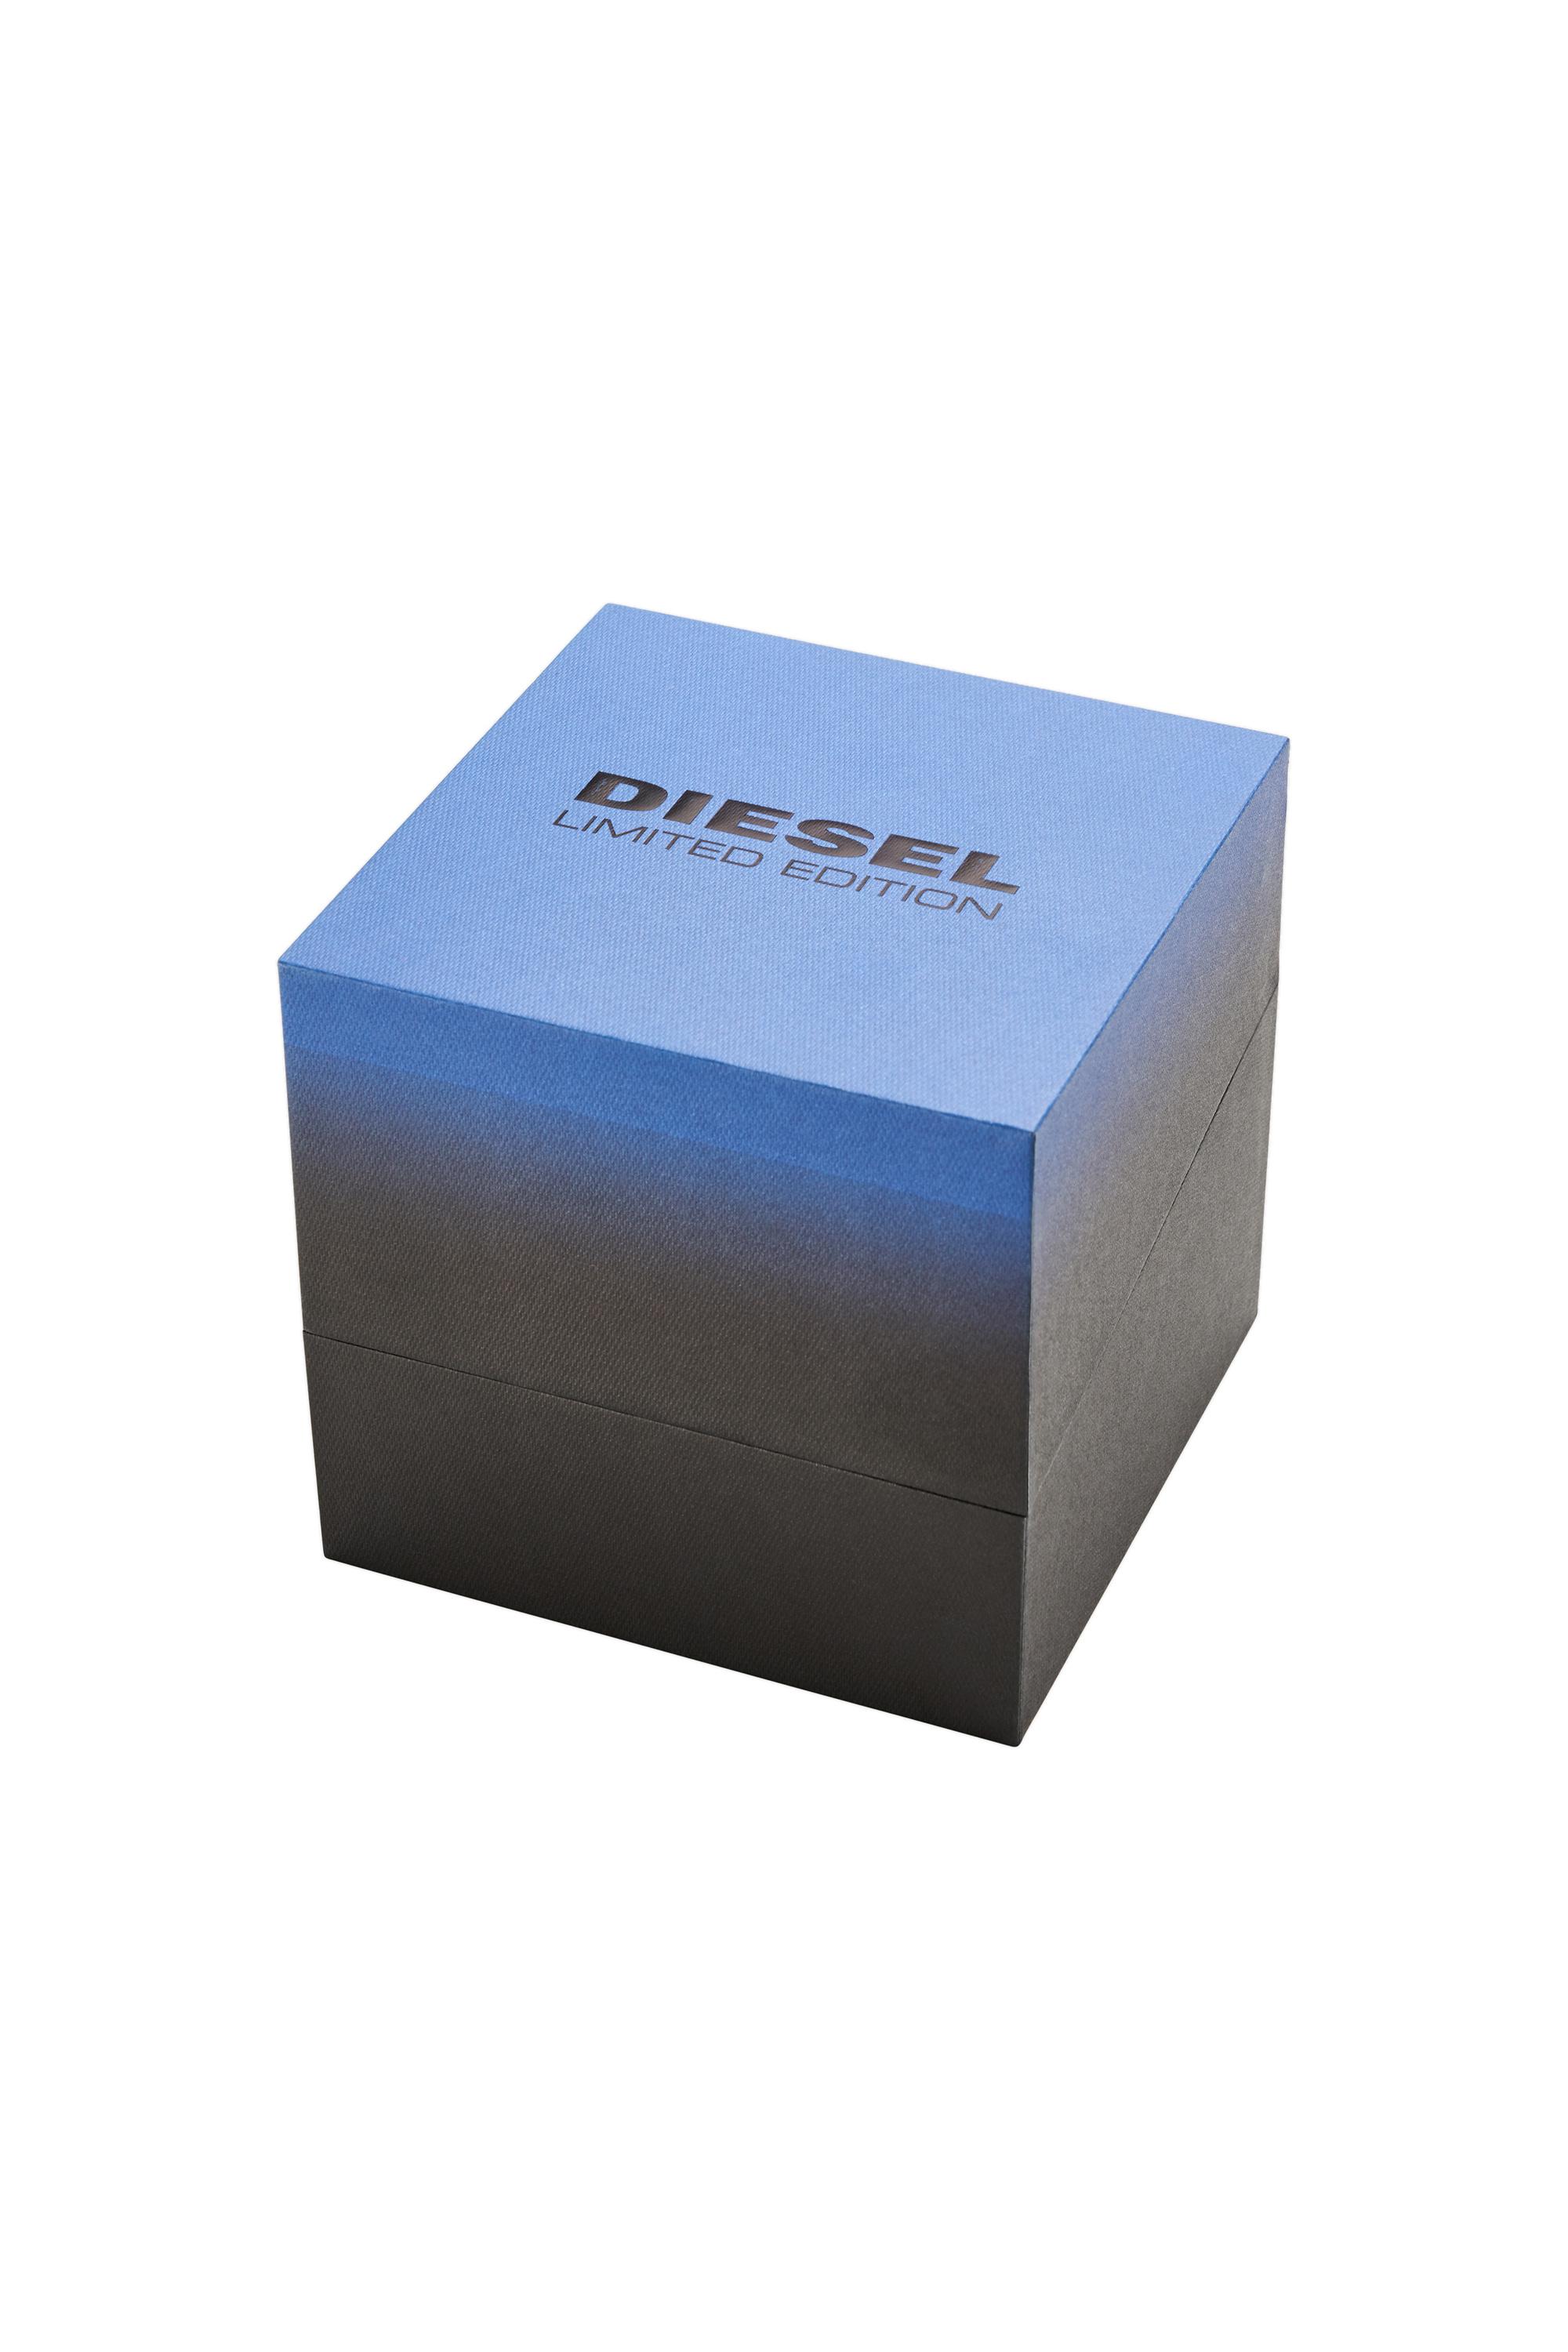 Diesel - DZ4553, Black/Blue - Image 5